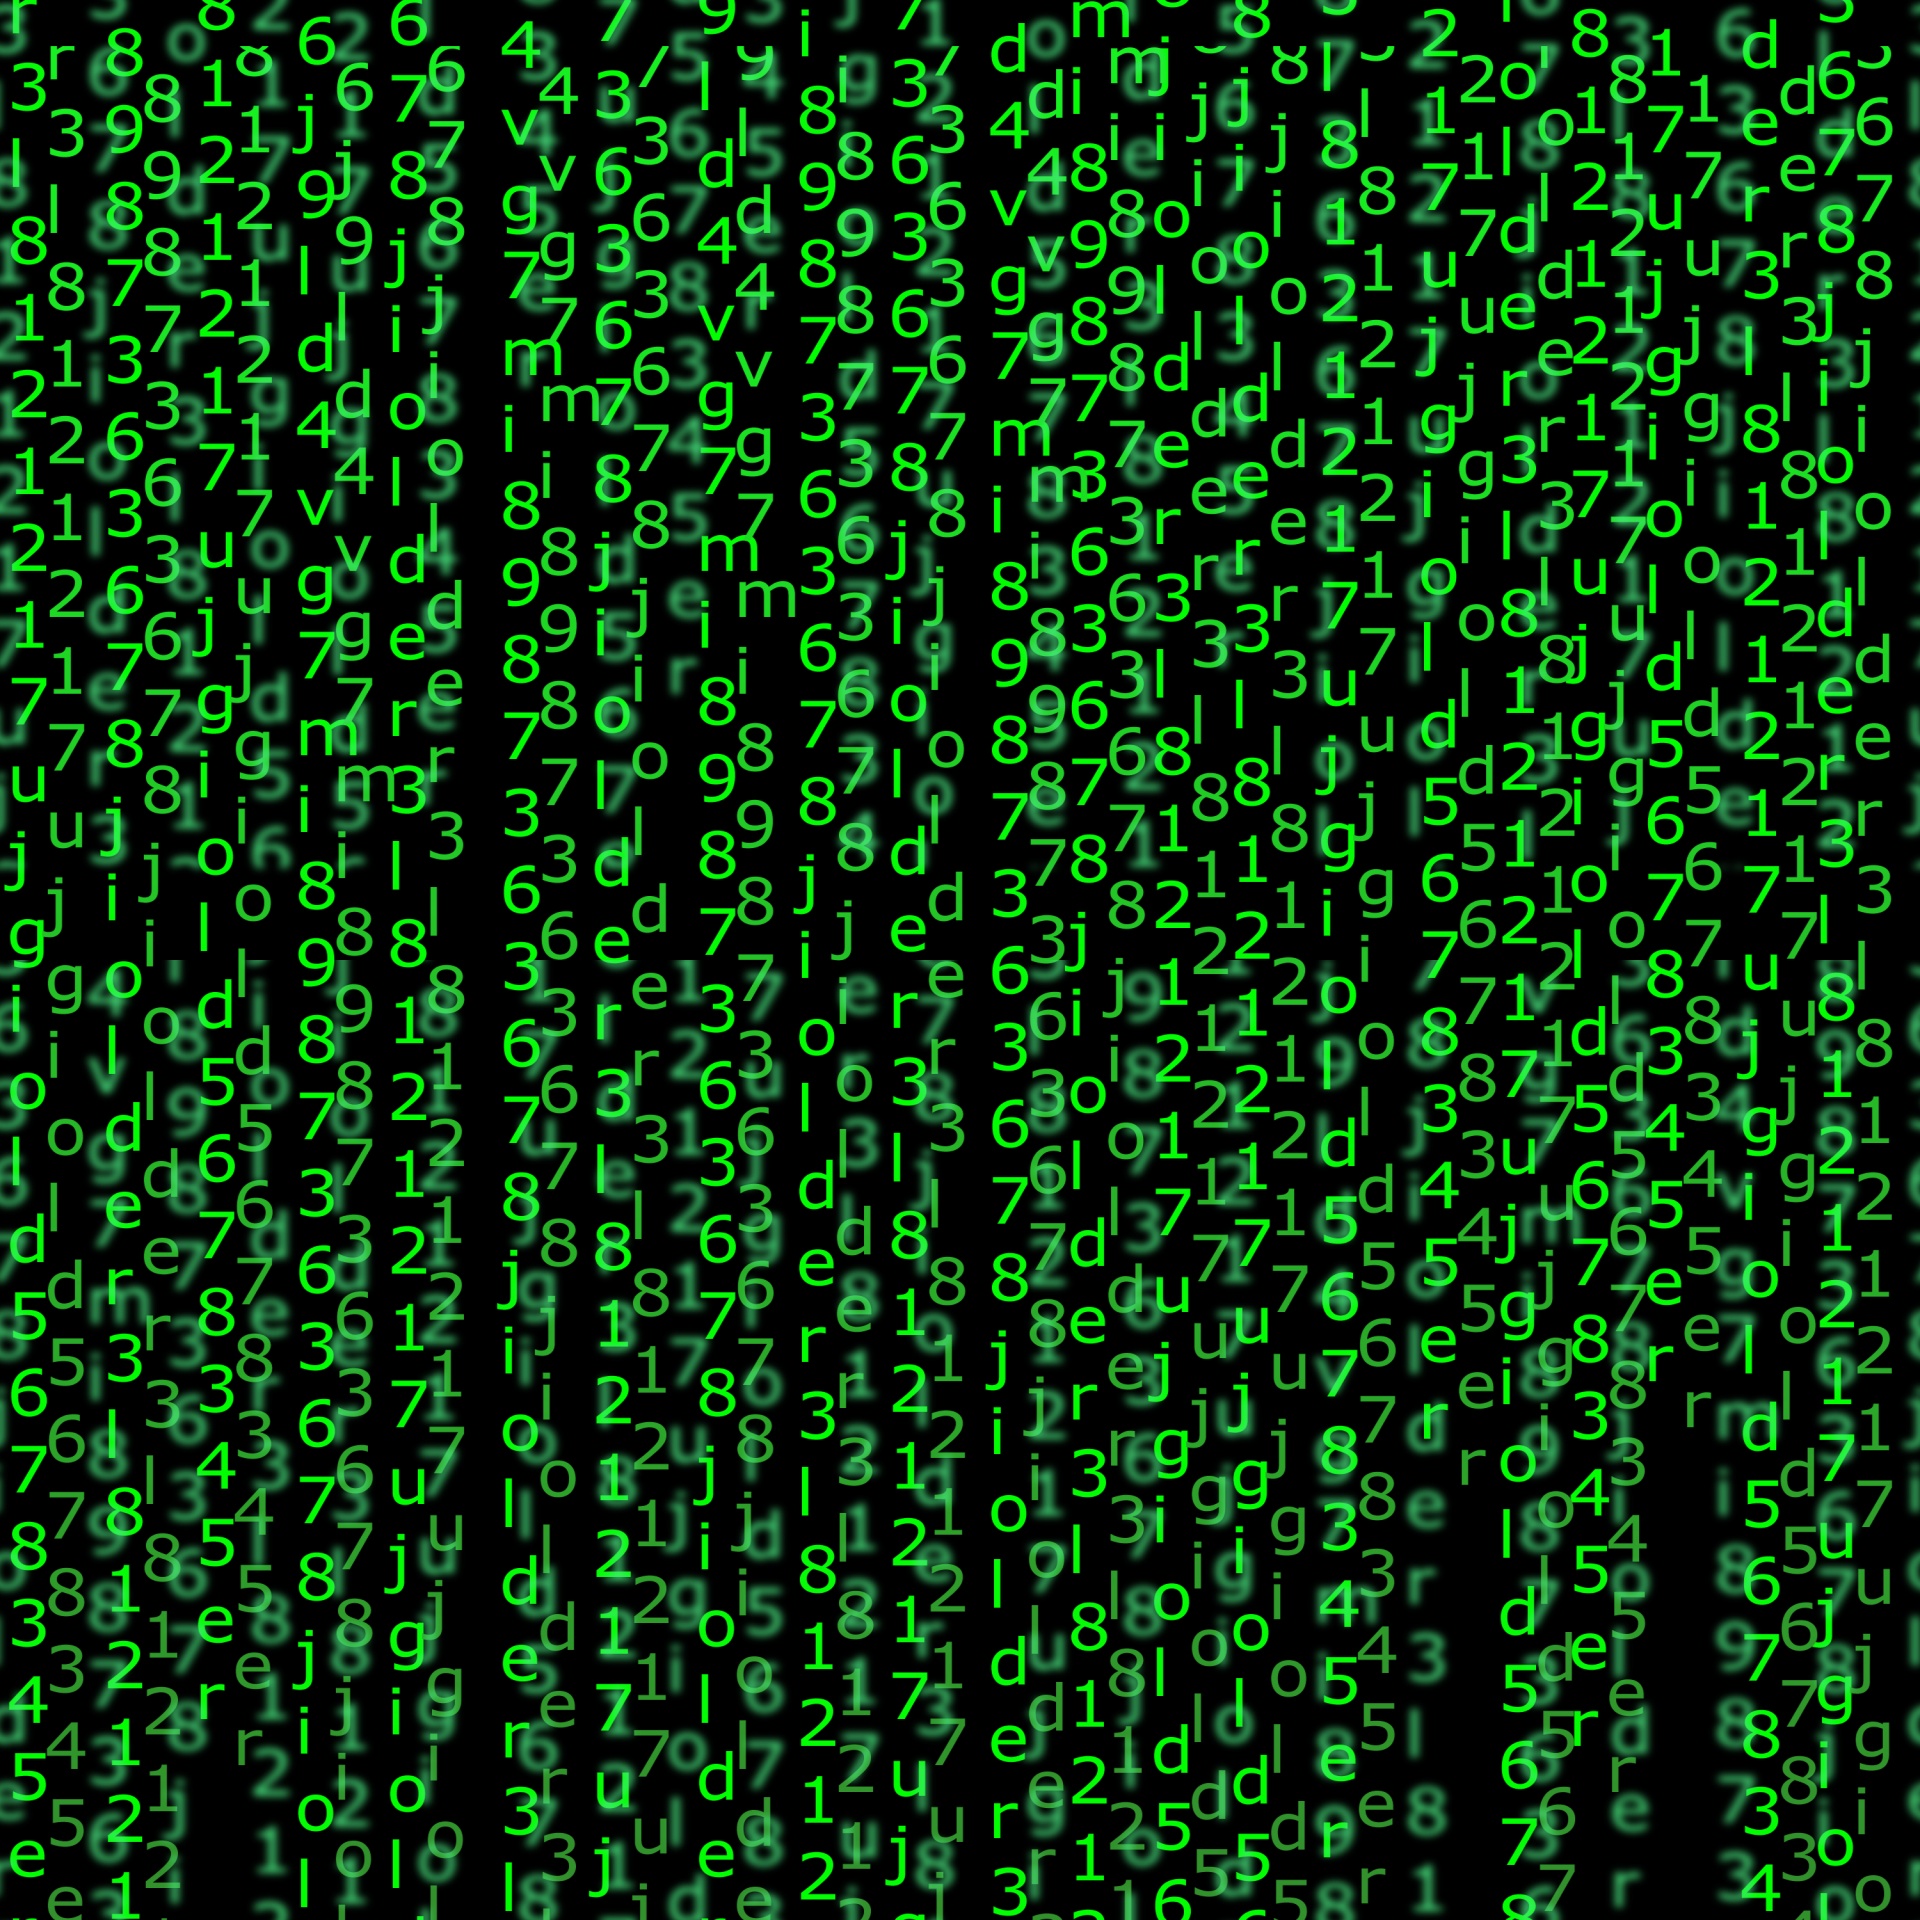 matrix data